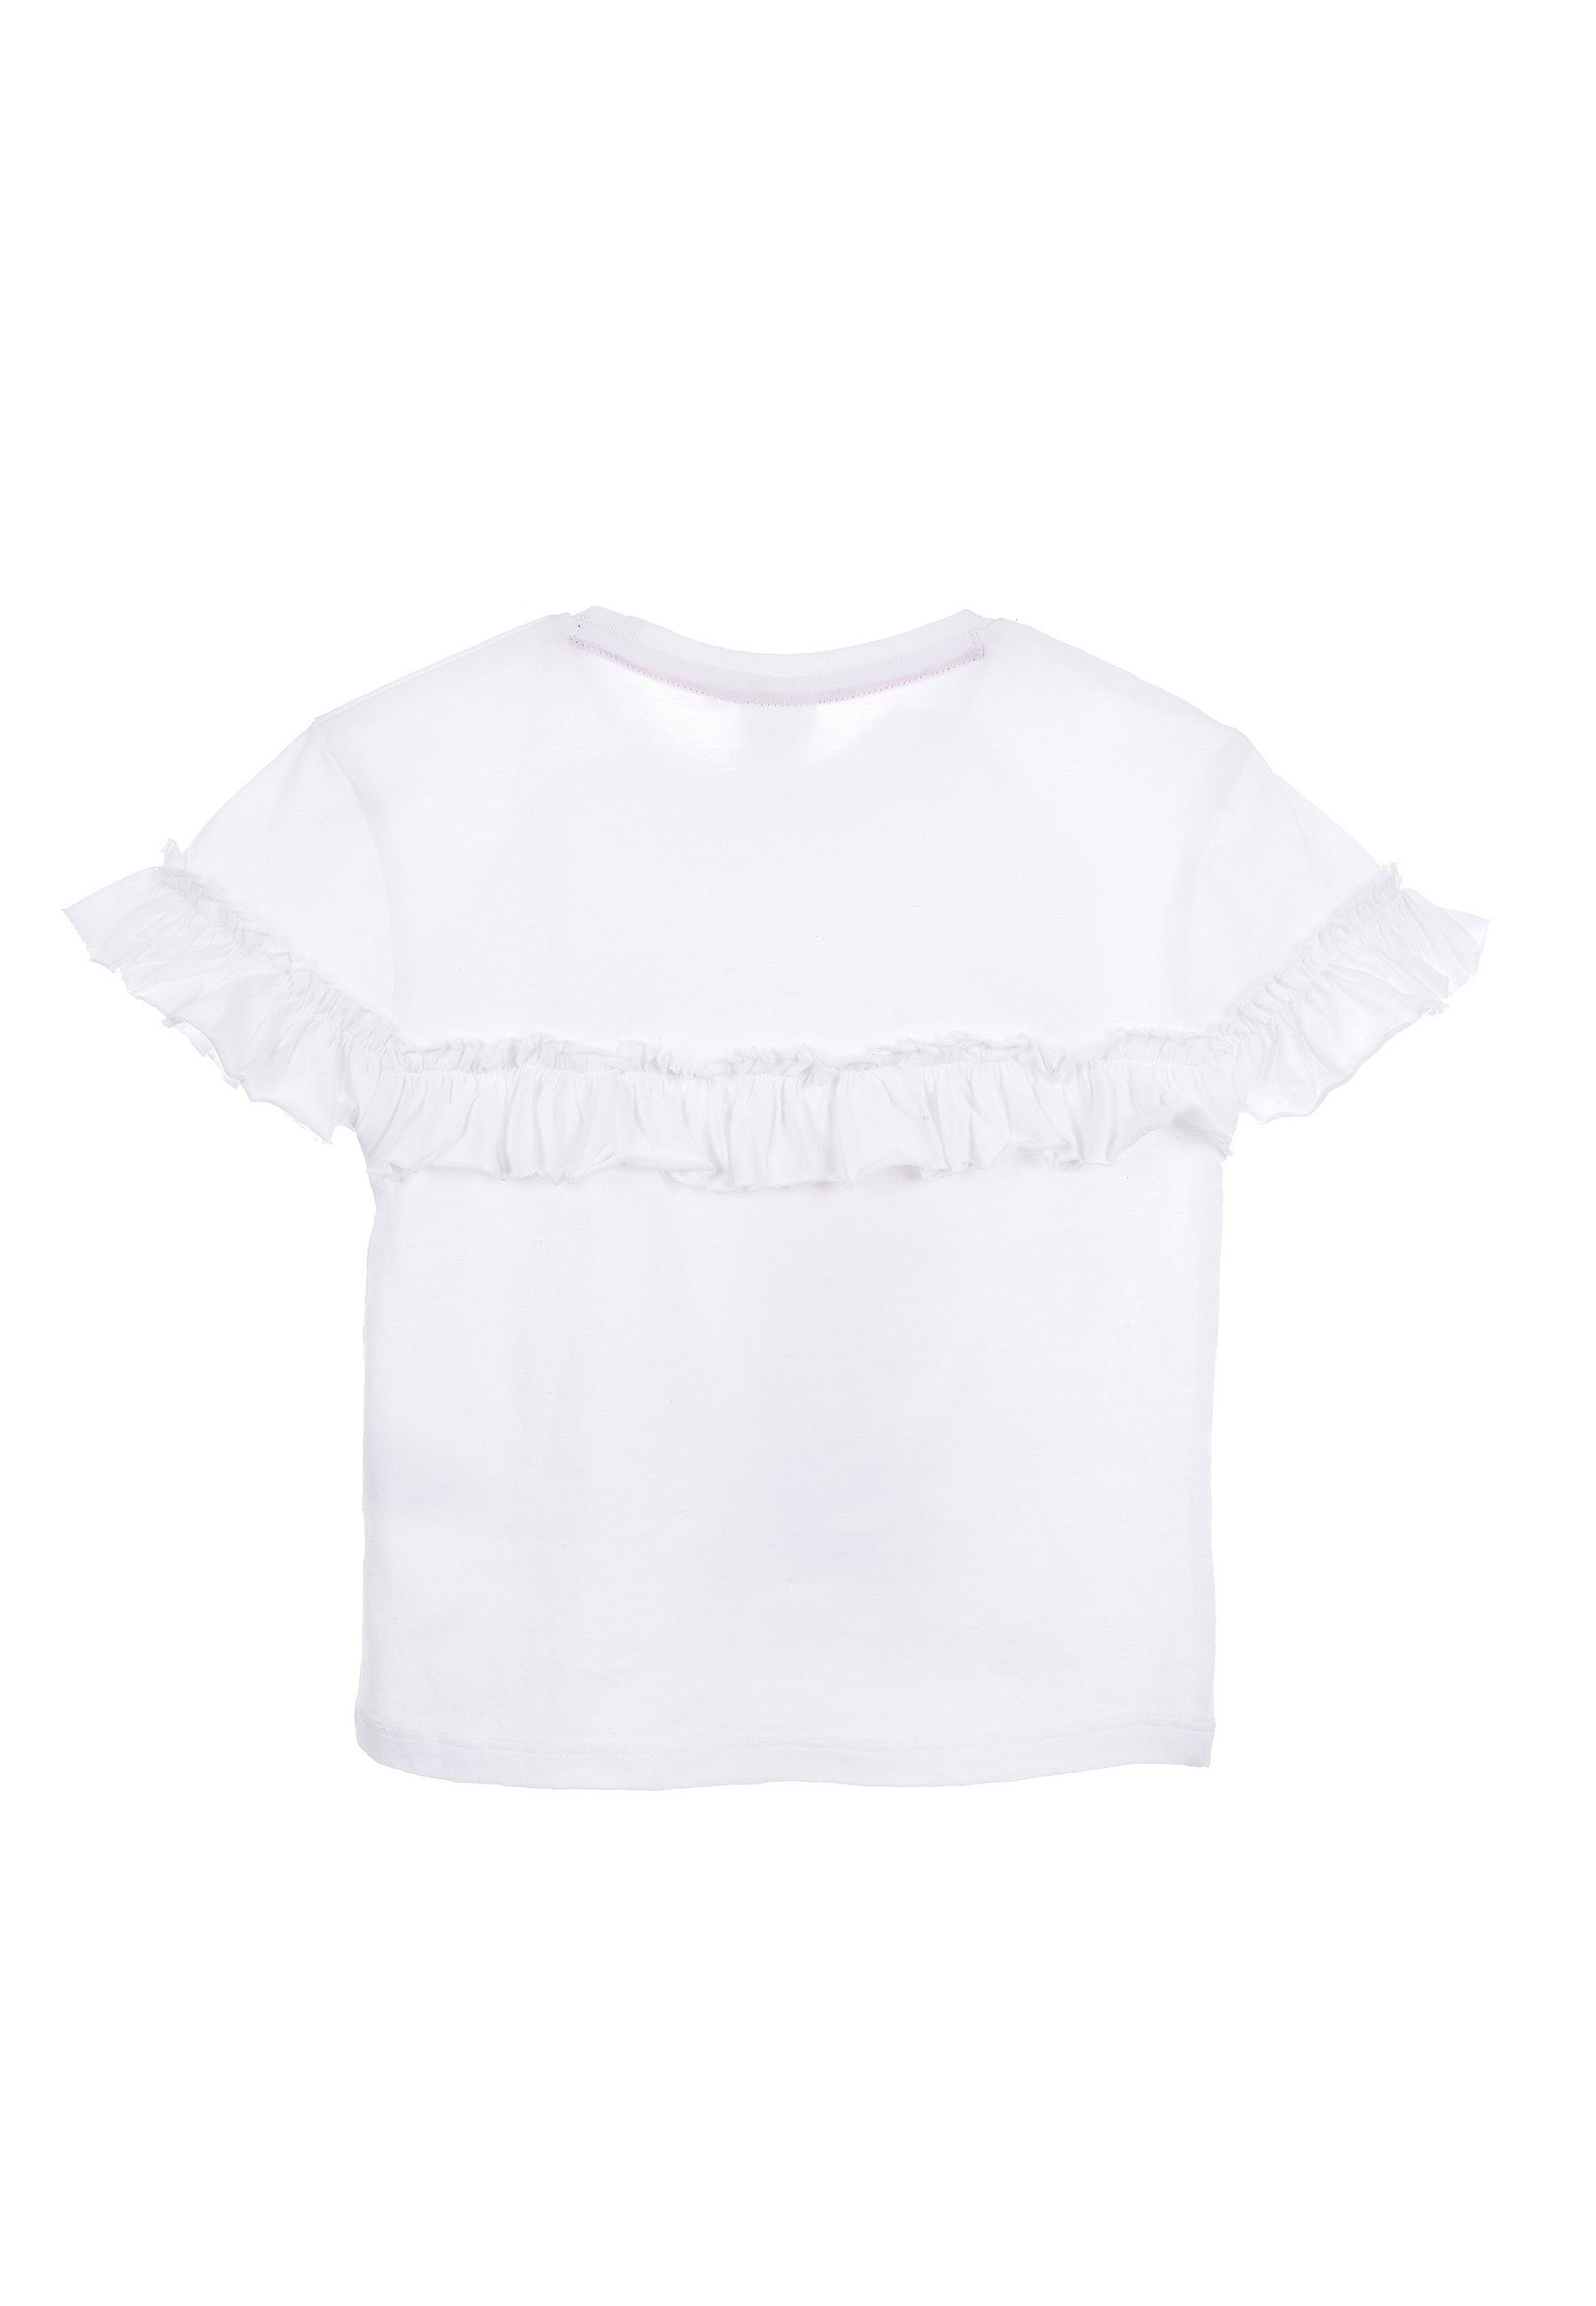 Die Sommer Mädchen - Eiskönigin T-Shirt Shirt Disney T-Shirt Frozen Weiß Frozen